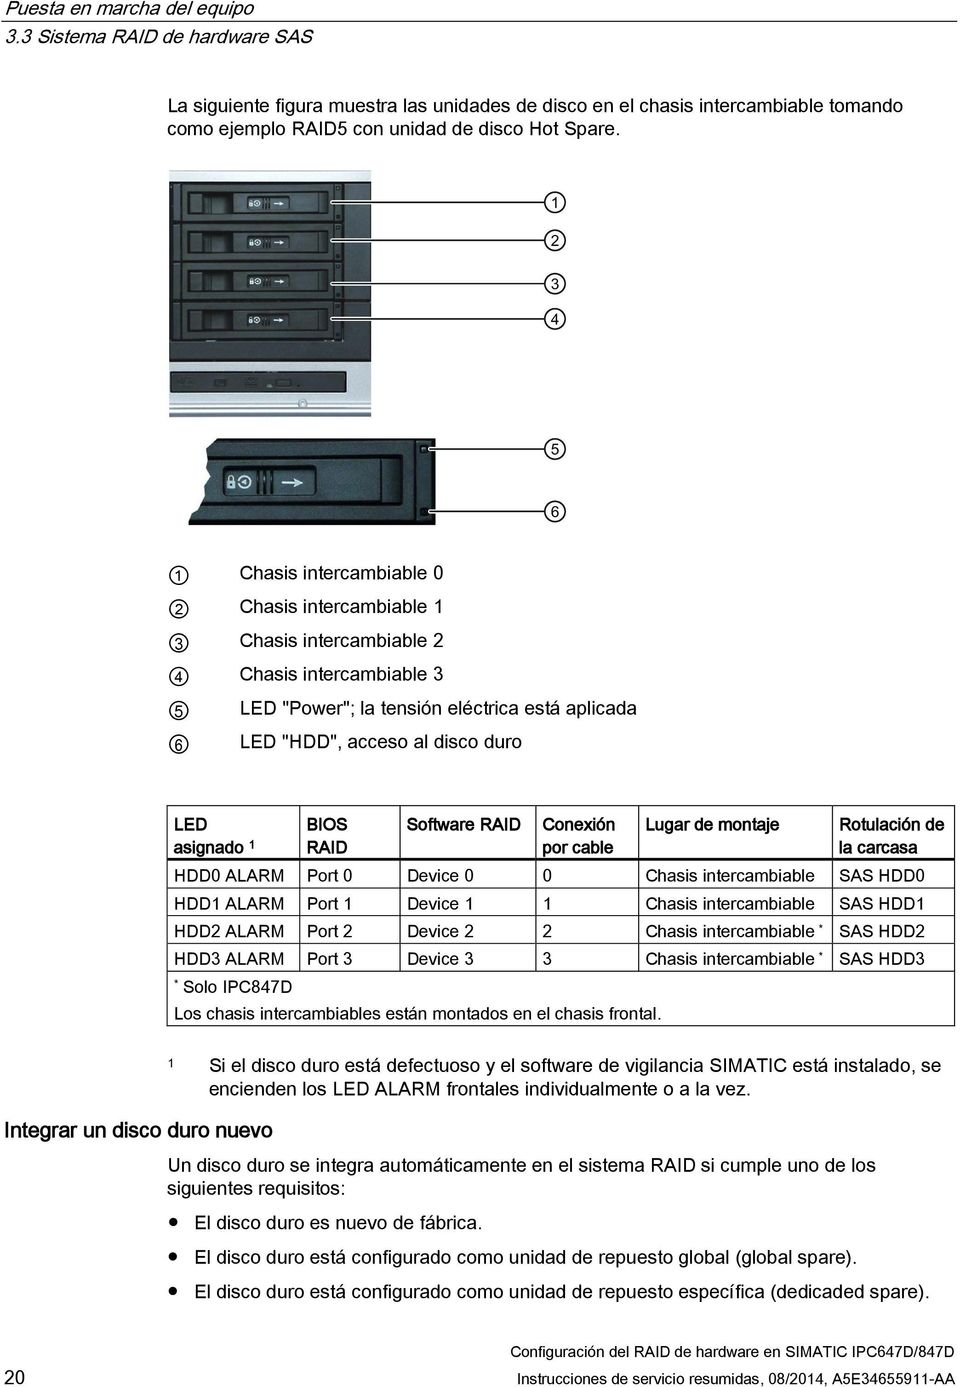 asignado 1 BIOS RAID Software RAID Conexión por cable Lugar de montaje Rotulación de la carcasa HDD0 ALARM Port 0 Device 0 0 Chasis intercambiable SAS HDD0 HDD1 ALARM Port 1 Device 1 1 Chasis